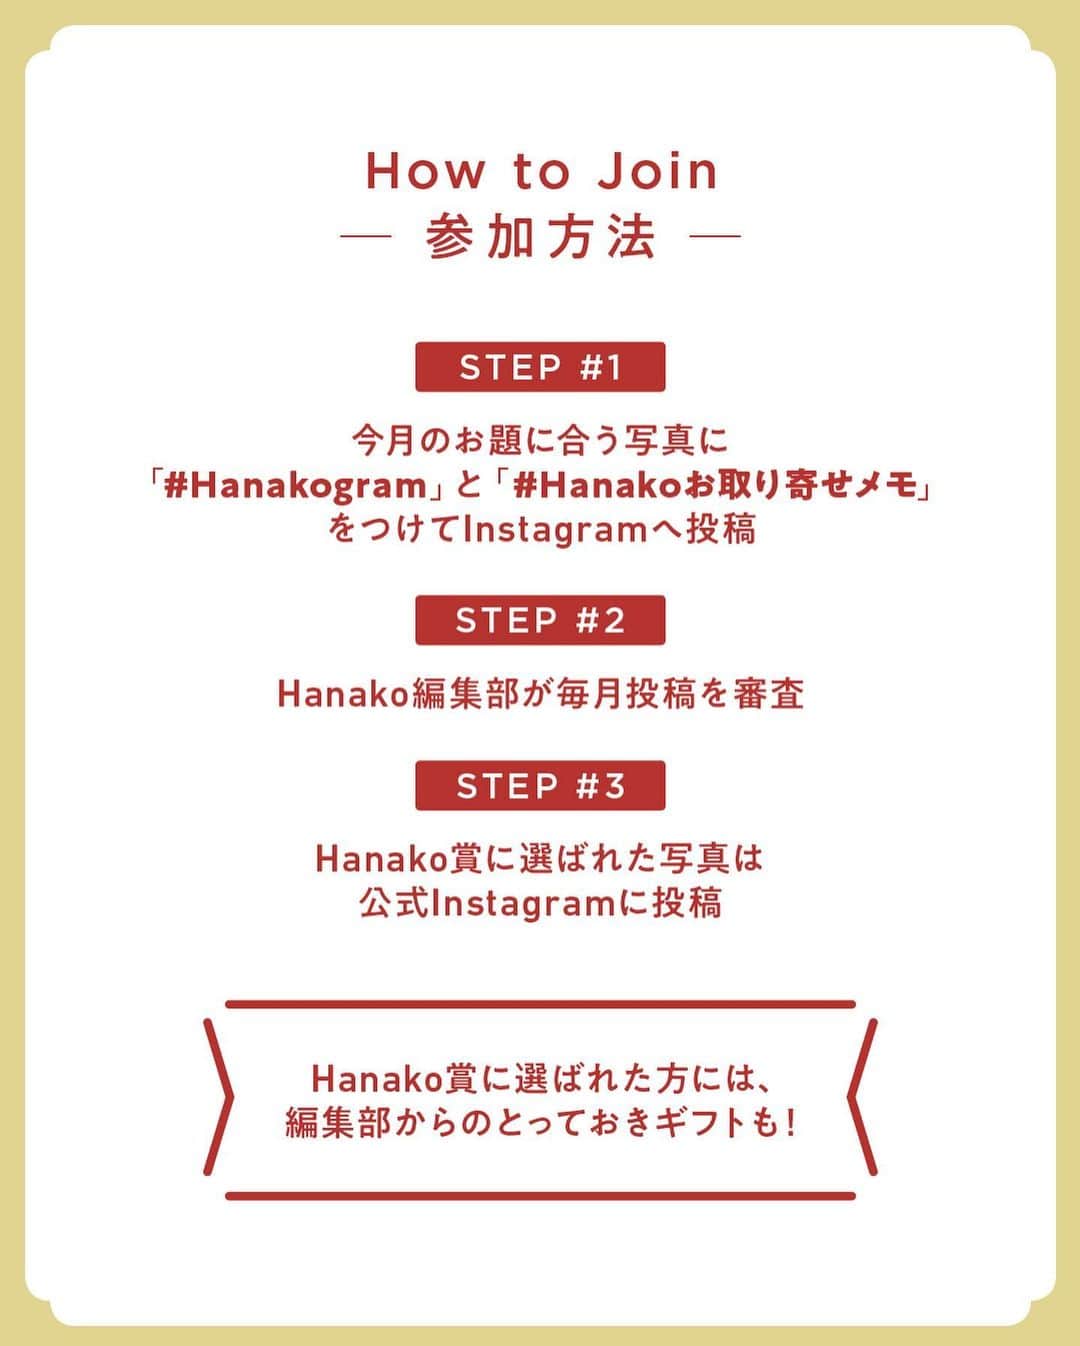 Hanako公式さんのインスタグラム写真 - (Hanako公式Instagram)「#3 Hanakoお取り寄せ図鑑🍒﻿ フードディレクター・野村友里さんがHanakoで連載中の『Good Neighbors,Good Suppliers』。 約6年の連載の中で出会ったお取り寄せ食材をご紹介します。﻿ ﻿ ﻿ 1.〈陰陽洞〉の「生存茶」﻿ 逗子の人気自然食品店〈陰陽洞〉。オリジナ ルの「生存茶」には、はとむぎ、どくだみ、 びわ葉、柿の葉など 8 種の国産野草がブレンドされています。煮出してみるとクセのない優しい味わいに🍂﻿ ﻿ 2.〈青果ミコト屋〉の「野菜お試しセット」﻿ 自然栽培を中心に作られた全国の新鮮野菜を定期宅配。国内の産地を巡り、野菜を楽しむイベントも開催。野菜は一袋ごとに生産者や保存方法、食べ方などの情報が。6〜8種入りのお試しセット1,580円は1回のみ、以降は週1回か隔週、月1回の注文に🍅﻿ ﻿ 3.〈藤野良品店〉の「チョコレート」﻿ 店主は、新たな暮らし方を求め神奈川県旧藤野町の里山に移住。夫が出張先のタンザニアで出合ったカカオ豆を里山の木炭で焙煎し、有機砂糖だけを加えてチョコレートに。カカオの実を表現した形と、藤野の作家による包装も素敵🍫﻿ ﻿ 4.〈鈴廣かまぼこ〉の「切れてる板わさセット」﻿ 小田原に本店がある、天然素材にこだわった蒲鉾の老舗。同社が提案するおいしい厚み、12mmにカットされた「切れてる板わさセット」は、むっちり弾力があり味わい深い。ワサビとオリーブオイルで和洋の風味を楽しんで。🐟﻿ ﻿ 5.〈PARADISE ALLEY BREAD&CO . 〉の「造形パン」﻿ 自家製天然酵母への、あくなき愛にあふれる鎌倉のパン屋さん。イラストやメッセージをのせたアーティスティックな「造形パン」は、ギフトにもぜひ。オーダーは予算から相談可能(配送希望日の10日前までに要連絡)🥪﻿ ﻿ 6.〈邦栄堂製麺〉の「生中華麺」﻿ 鎌倉にある町の製麺所。67年続くシンプルな麺たちは、どこか懐かしい食感と香り。細麺や平太麺などお好みのスープで素ラーメンを楽しんでみて🍜﻿ ﻿ 7.〈なでしこ農園〉の「バルサミコ」﻿ 収穫から熟成まで自らの手で。糖度の高いモストコット(原料となる果汁を煮詰めたもの)により果実味が豊かに。熟成の年月が異なる二本の違いを楽しんで🥄﻿ ﻿ ﻿ 8.〈小笠原味淋醸造〉の「本みりん」﻿ 佐賀県の上質なもち米と自家製の麹、焼酎を原料に、大正11(1922)年の創業時から変わらぬ製法で造り続ける。4年間熟成させたみりんは上品な甘味があり、そのまま飲んでもおいしい🌾﻿ ﻿ 9.〈Nomadic Kitchen〉の「Nomadic Salt」﻿ 野村友里さんやイタリアンレストラン〈CignaleENOTECA〉の東森俊二さんら、料理人たちによるプロジェクトから生まれた商品。和歌山の特産品である山椒とゆずを合わせた、ピリリと刺激的な味🧂﻿ ﻿ 10.〈山利〉の「釡あげしらす」﻿ 潮の流れが速い紀伊水道で獲れた、身の引き締まったしらすを赤穂の天塩のみを使って釡あげに。シンプルな食材・製法ゆえに、新鮮であることを追求し、水揚げしたらすぐに加工場で茹であげるそう🎣﻿ ﻿ 11.〈滝川農園〉の「梅肉」﻿ 完熟して木から落ちたものや落ちる寸前の南高梅を木樽で仕込んだ「白干梅」を、手間を惜しまず裏ごししてペーストに。チューブ入りの使い勝手の良さで、おにぎりや和え物などに活躍。野村さんの定番品🍑﻿ ﻿ 12.〈堀河屋野村〉の「徑山寺味噌」﻿ 鎌倉時代から受け継いでいる味。地元産のなすやしそ、生姜などの夏野菜を大豆、麦、米などと一緒に仕込む。仕込んで1年未満の「新物」と、1年以上深く浸かった「熟成」の2種類から選べる。お茶請けやおにぎりの具材に🍙﻿ ﻿ 13.〈祇園むら田〉の「煎りごま・練りごま」﻿ 特製の機械でごまの皮をむいてから炒るため独特の力強い香りが楽しめる。すりこぎですると、このごまの実力をより感じることができるはず。練りごまも油分が高くクリーミー🥛﻿ ﻿ 14.〈krater winestore〉の「サングリアの素」﻿ 京都近郊で作られている旬の果物に、シナ モンなどのスパイスを加え、煮詰めてから瓶詰めに。ワインで割ると、季節のサングリアが完成する。赤、白どちらで割ってもおいしい🍷﻿ ﻿ _______________________________________﻿ ﻿ ＼ #Hanakogram 投稿募集中！／﻿ 📌参加方法はスワイプしてチェック！﻿ 期間は2020/7/10〜2020/8/9です。﻿ ﻿ _______________________________________﻿ ﻿ ﻿ 【Hanako1186号_2020年の今こそ取り寄せたいもの発売！】﻿ #Hanako #Hanako_magazine #stayhome #おうち時間 #おこもり #ポジティブおこもり #日々の暮らしを楽しむ #丁寧な暮らし #おうちカフェ」7月25日 22時59分 - hanako_magazine